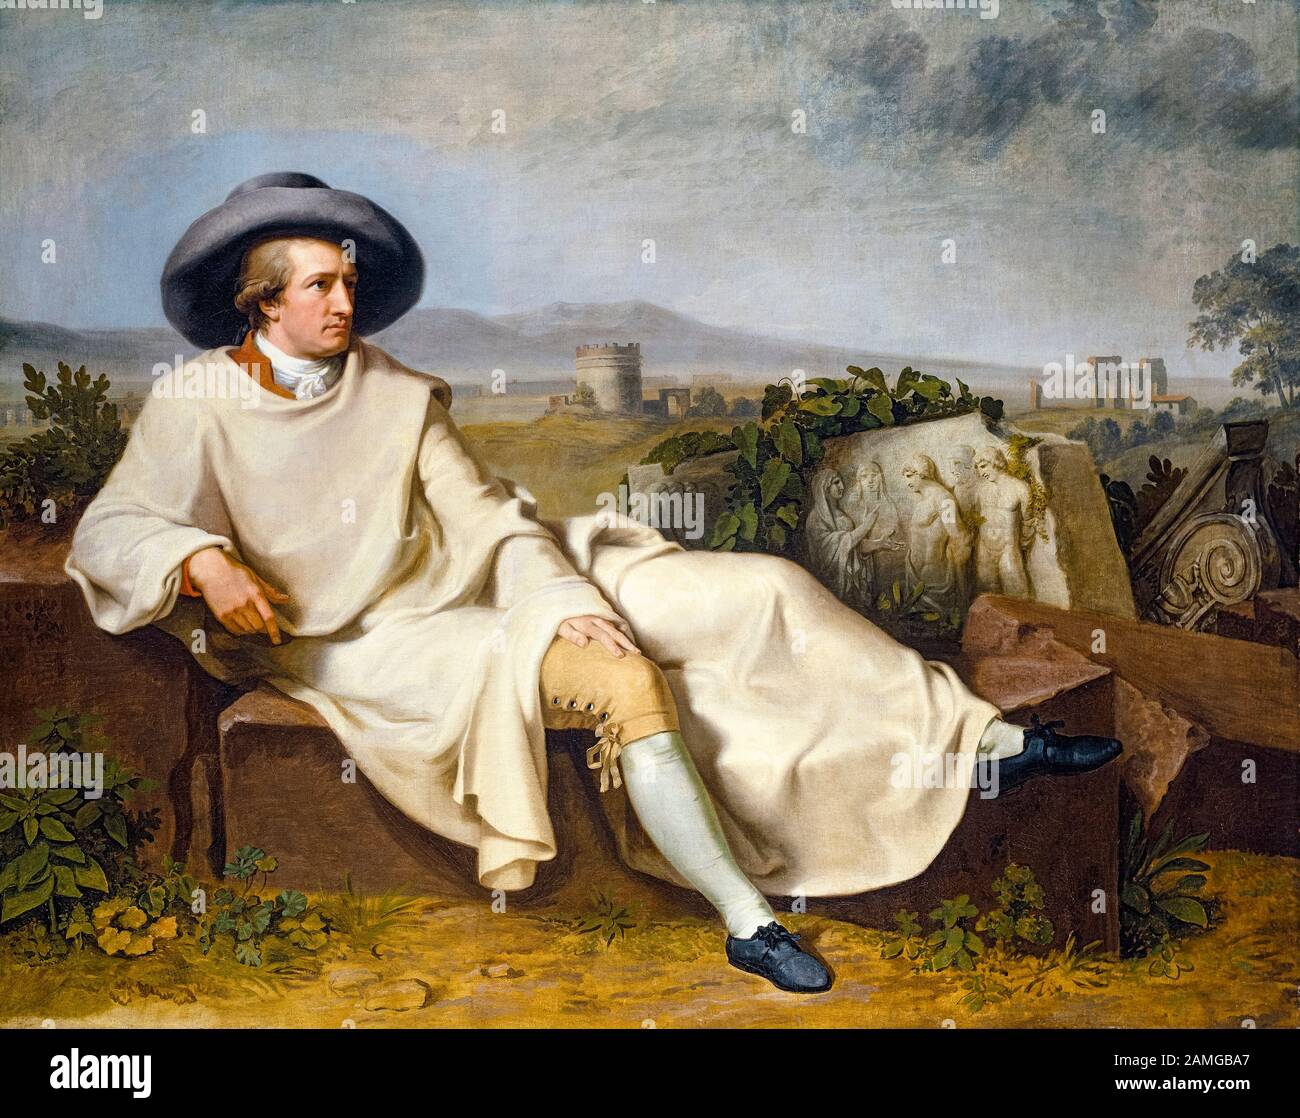 Johann Heinrich Wilhelm Tischbein, Goethe in the Roman Campagna, (Johann Wolfgang von Goethe (1749-1832)), portrait painting, 1787 Stock Photo